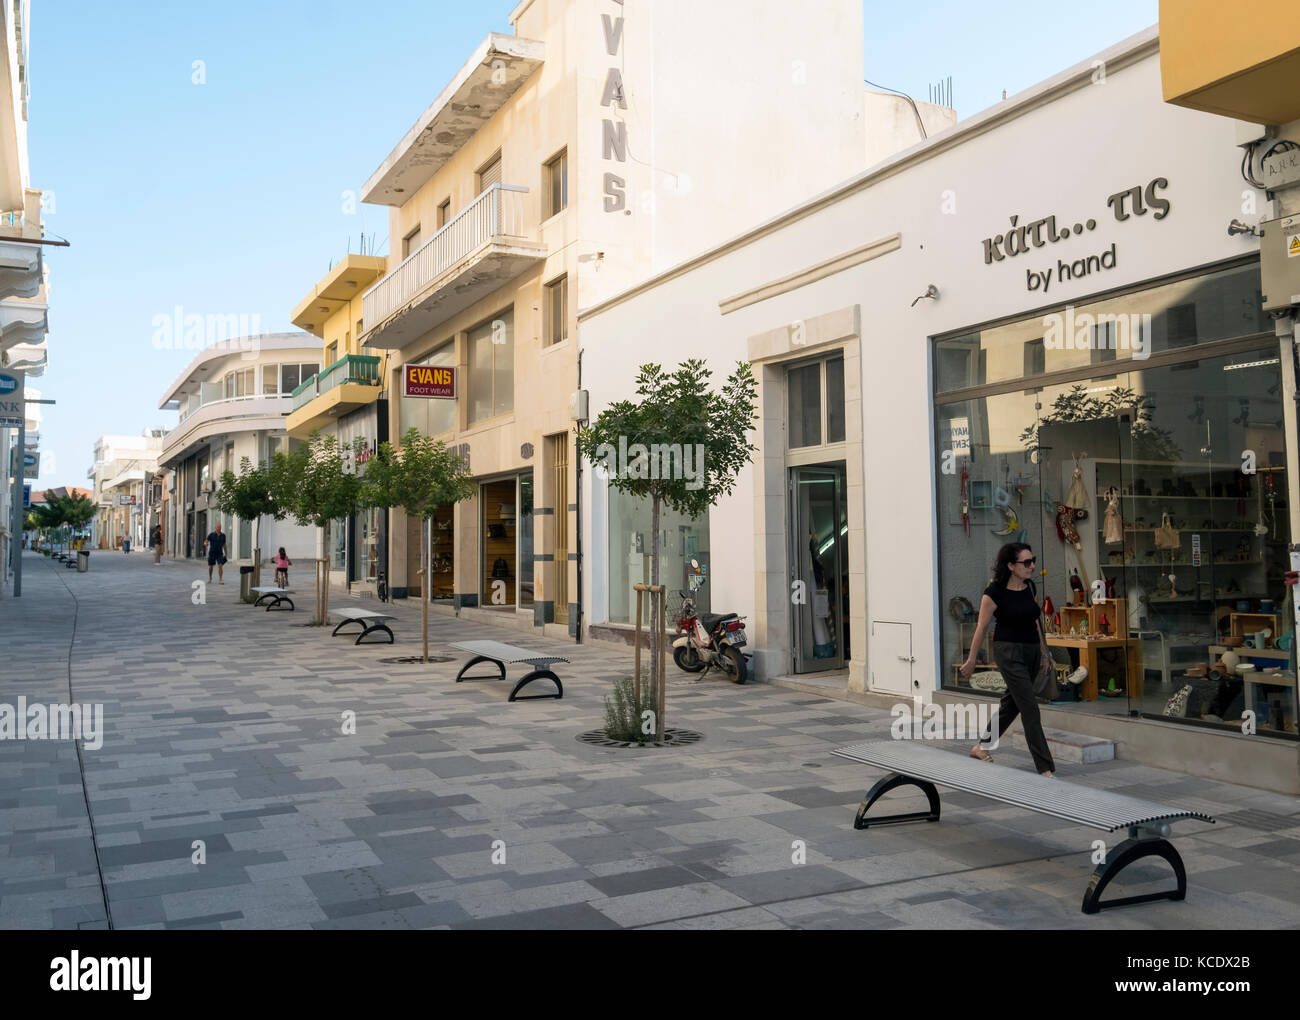 Eine neu asphaltierte Fußgängerzone in der Altstadt von Paphos, Zypern. Stockfoto